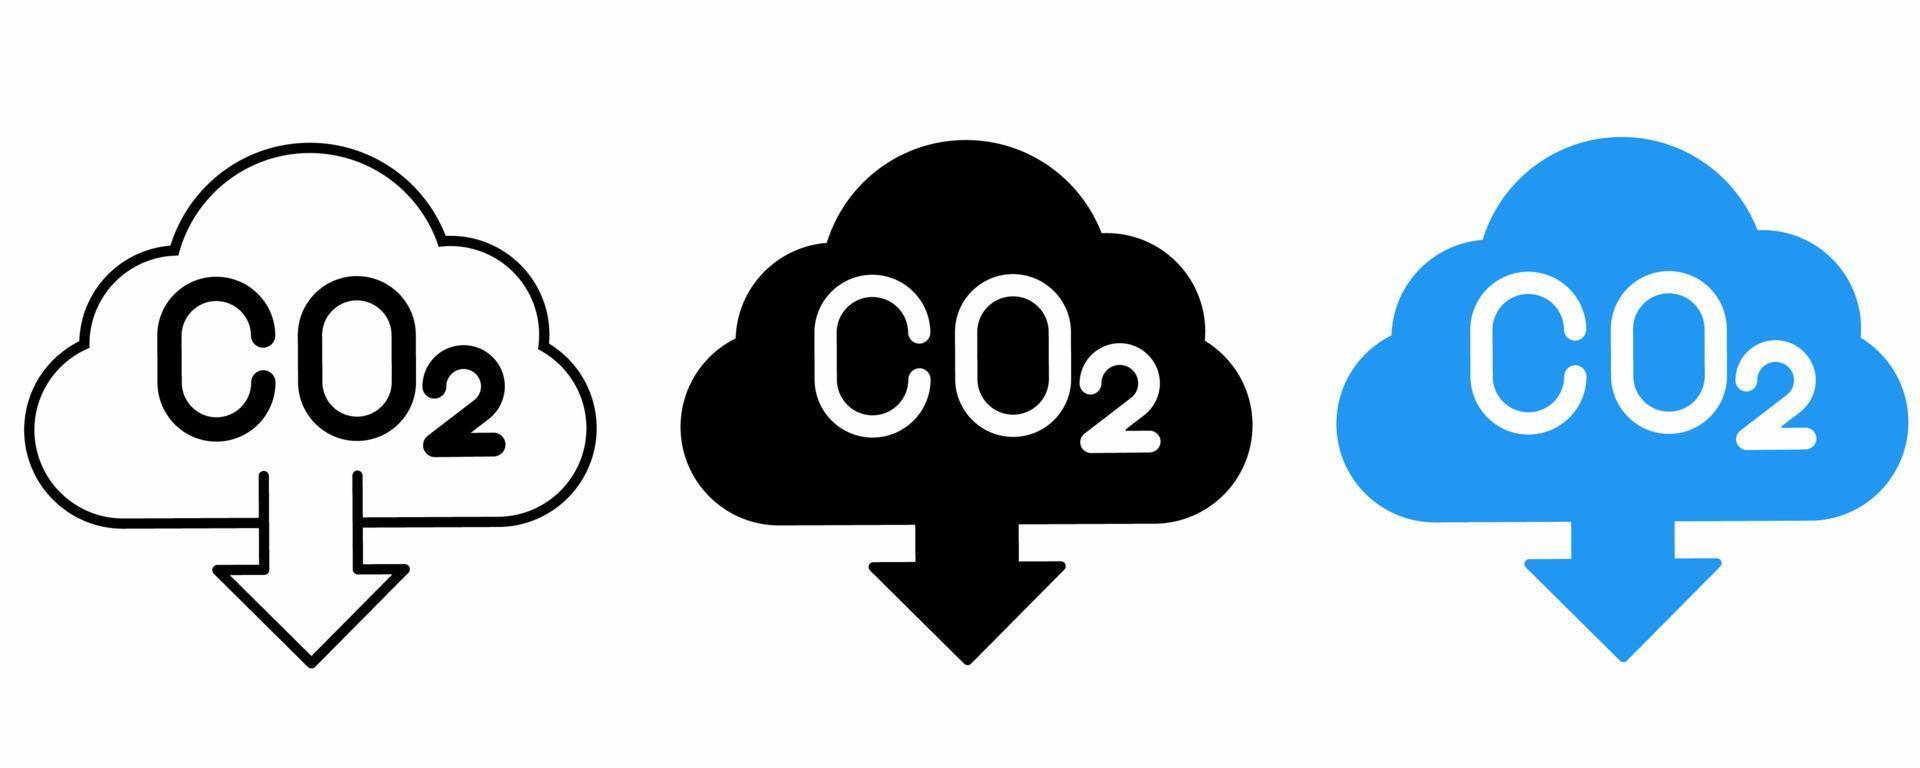 kol dioxid utsläpp minskning ikon uppsättning isolerat på vit background.co2 utsläpp minskning vektor illustration